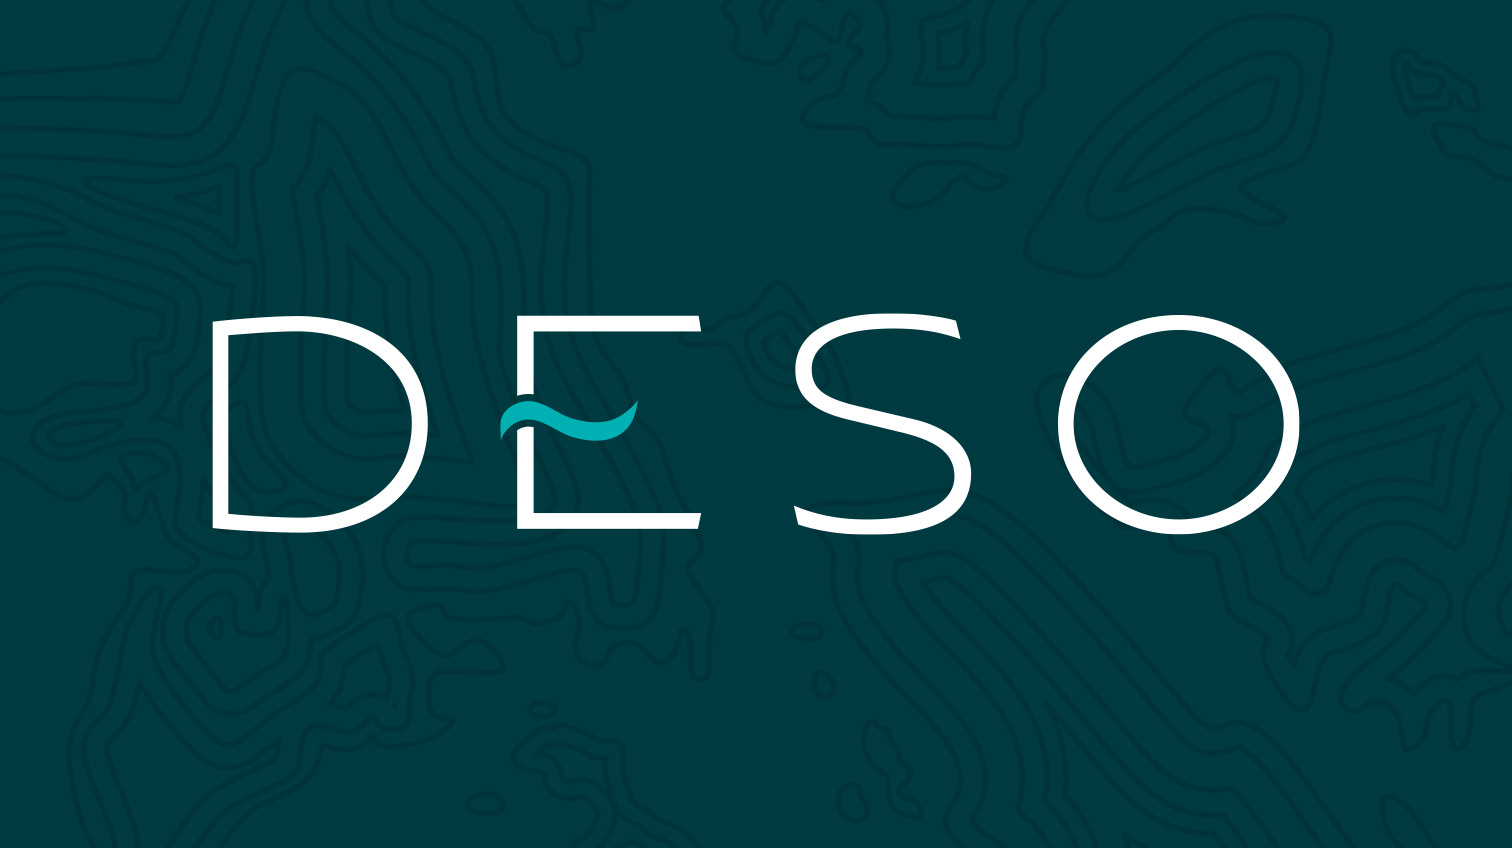 Deso logo against a dark blue background - White Canvas Design